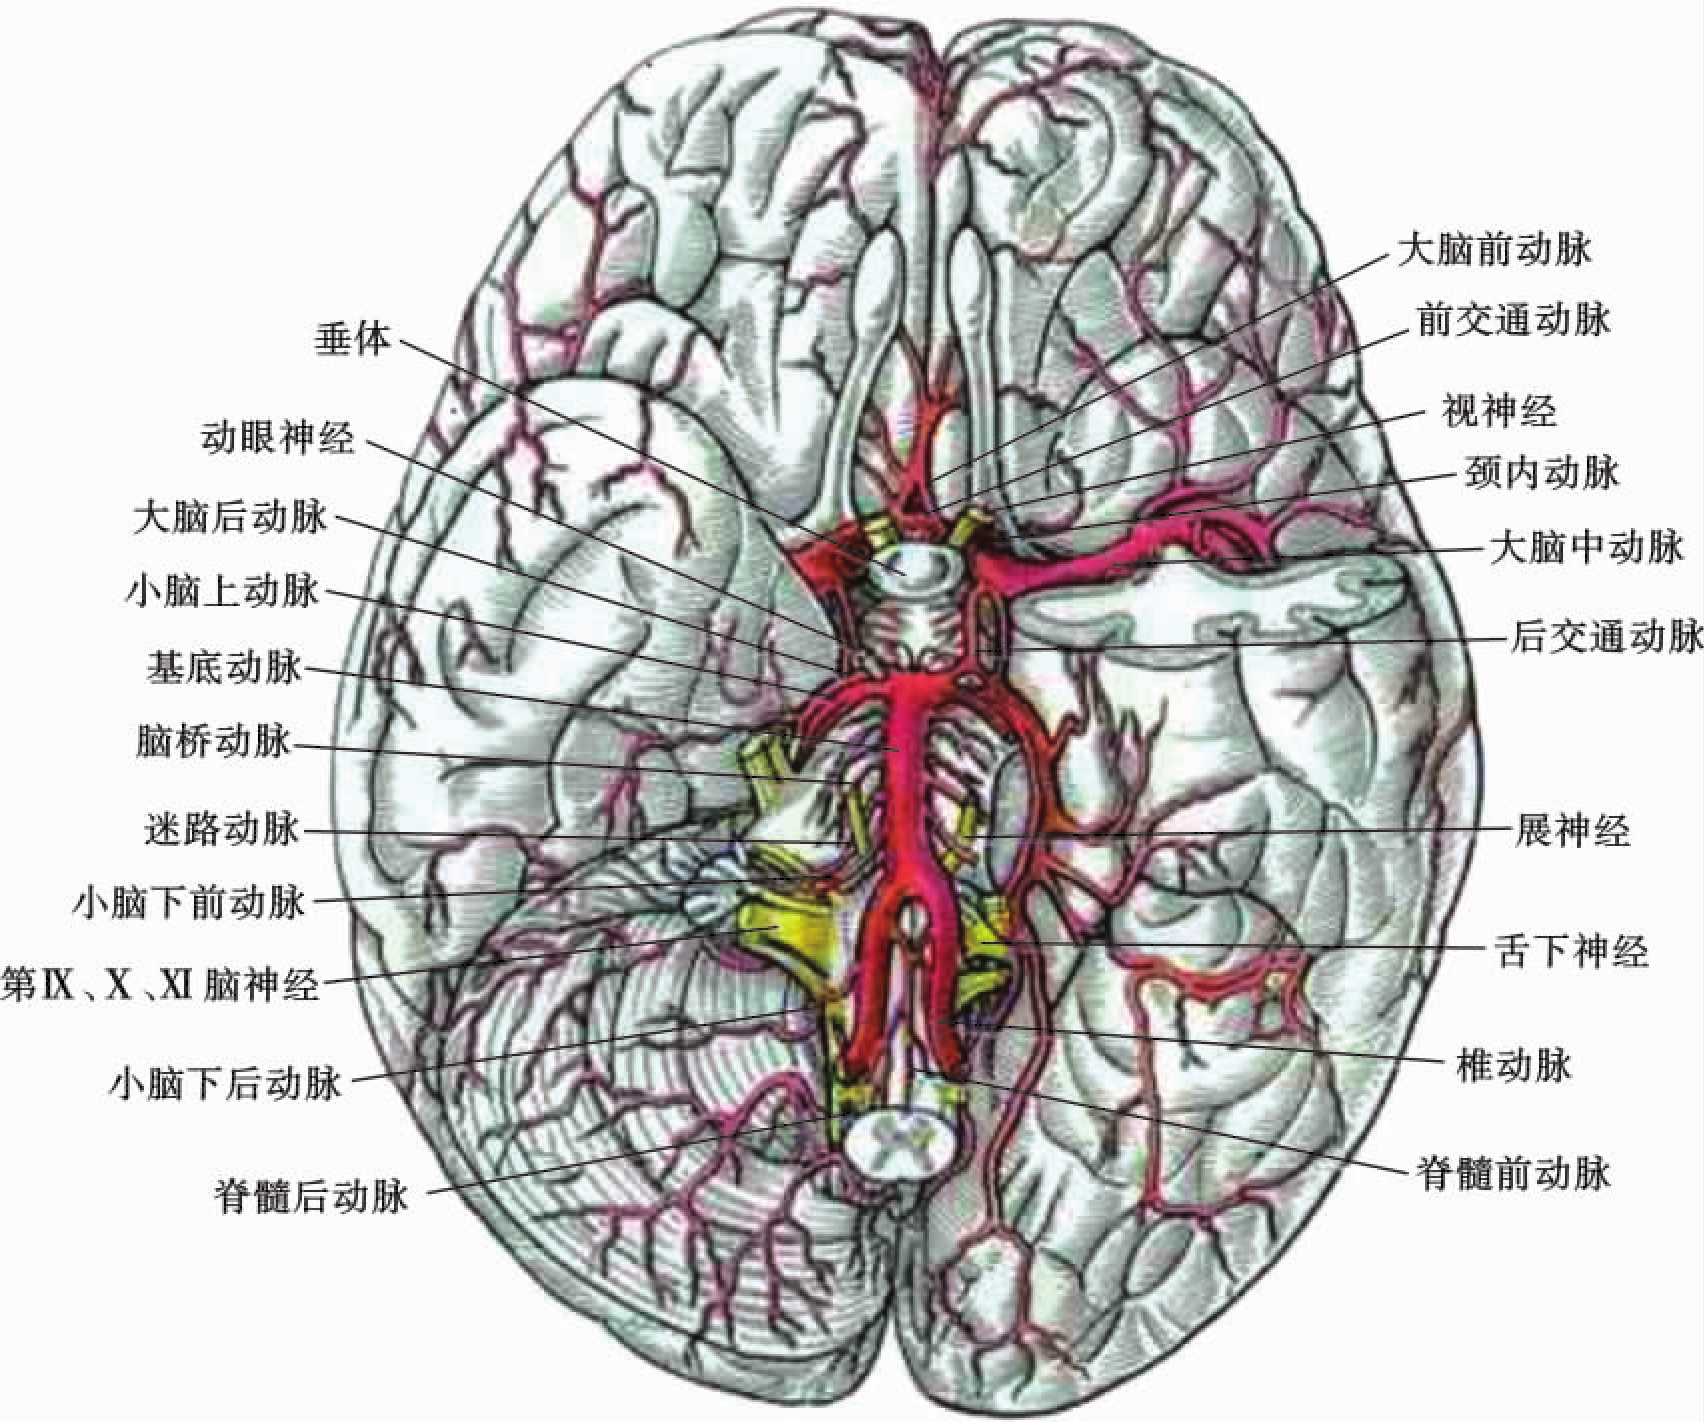 脑血管解剖学习笔记第42期：眼眶解剖 - 脑医汇 - 神外资讯 - 神介资讯